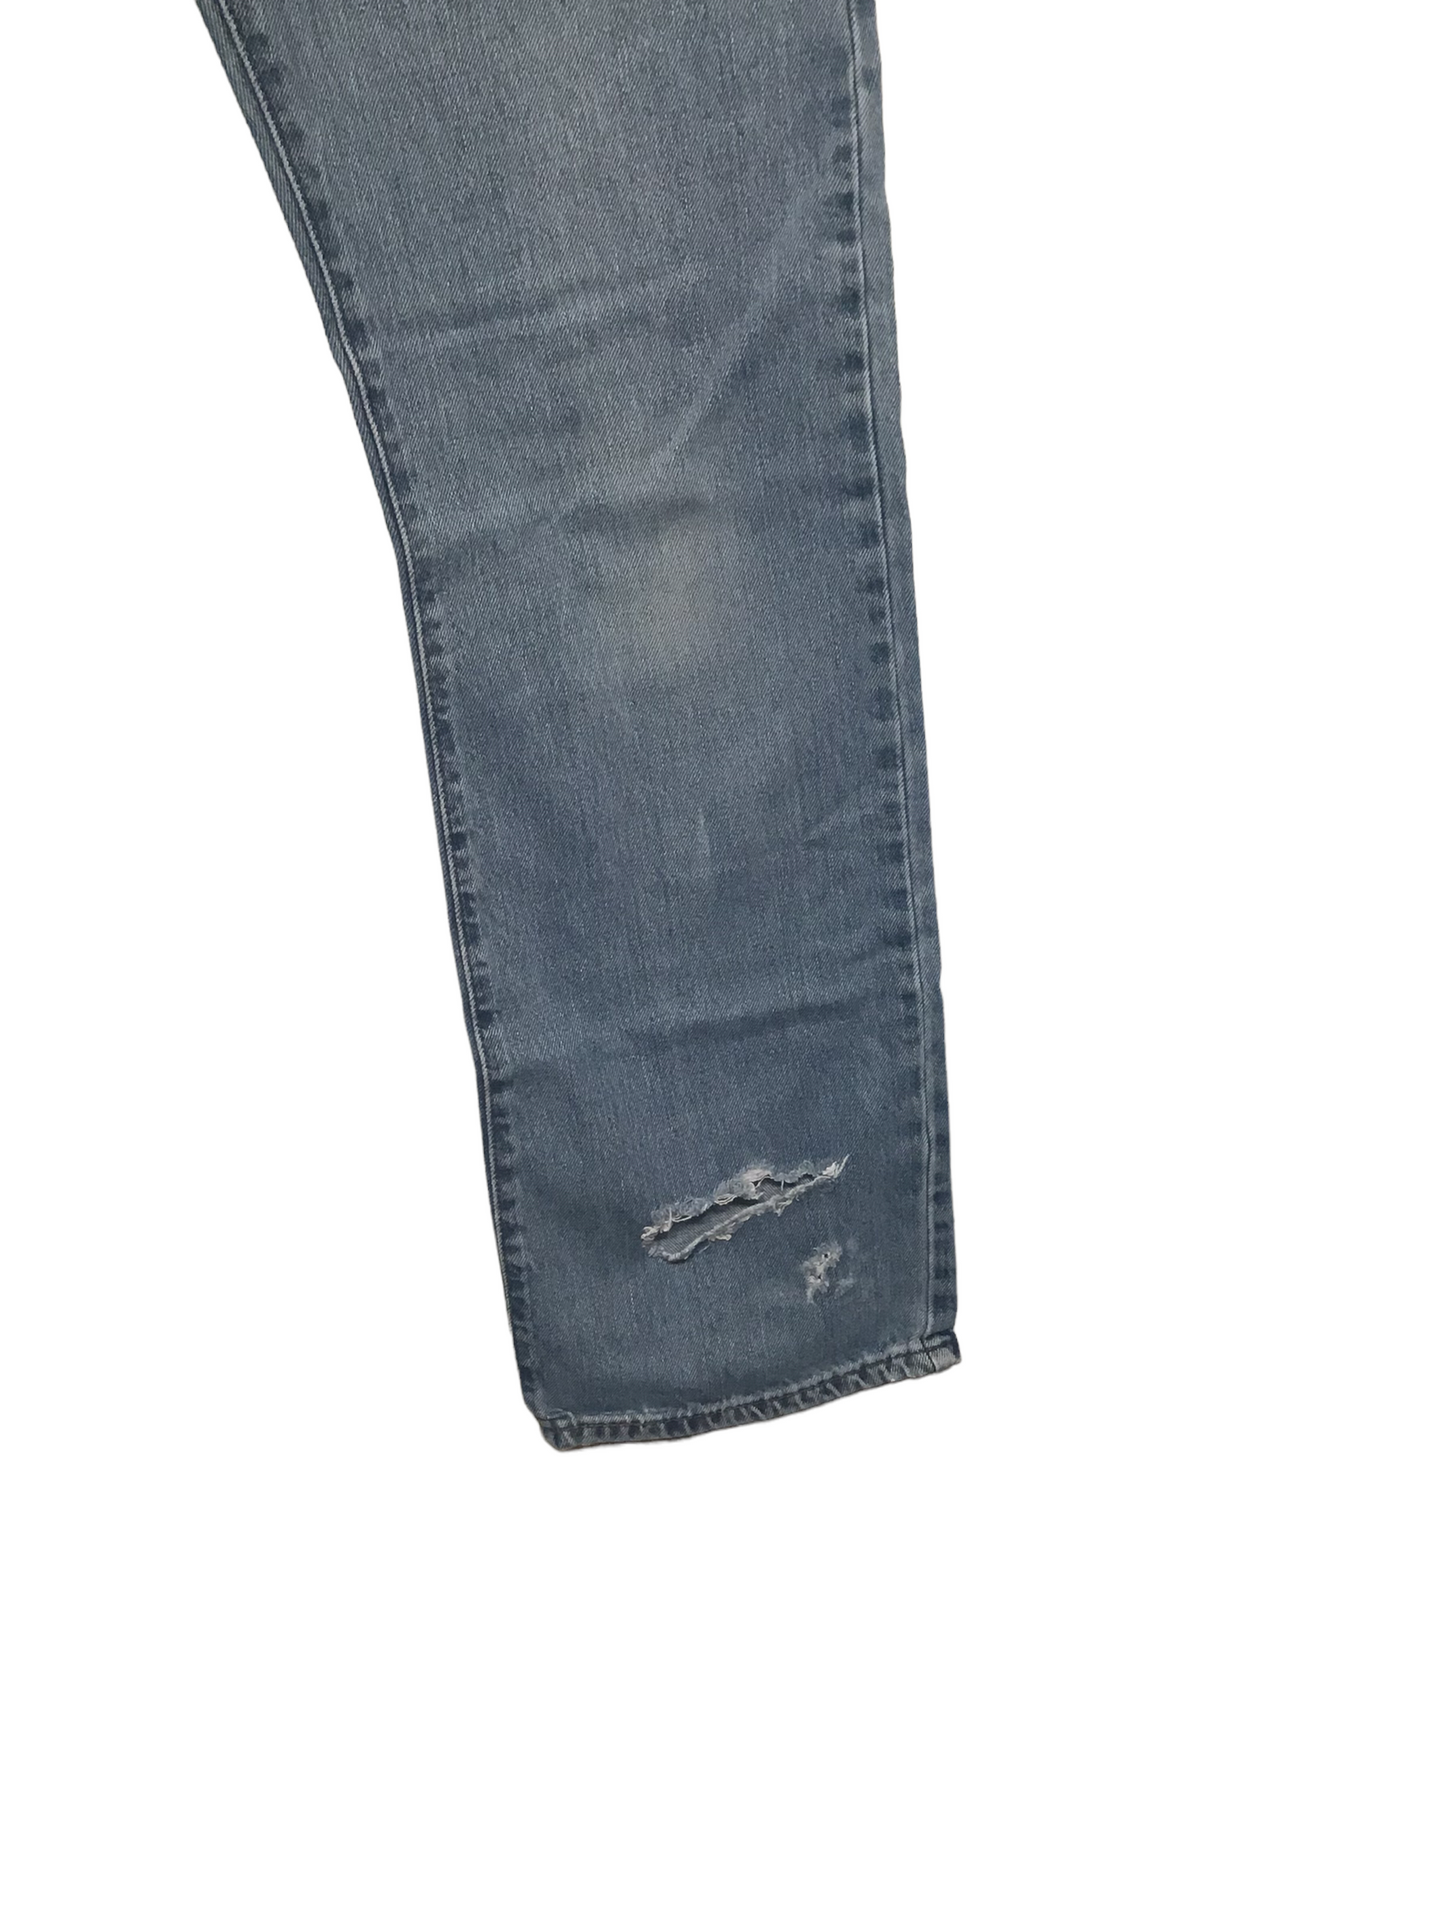 Levi 517 Jeans (33X34)